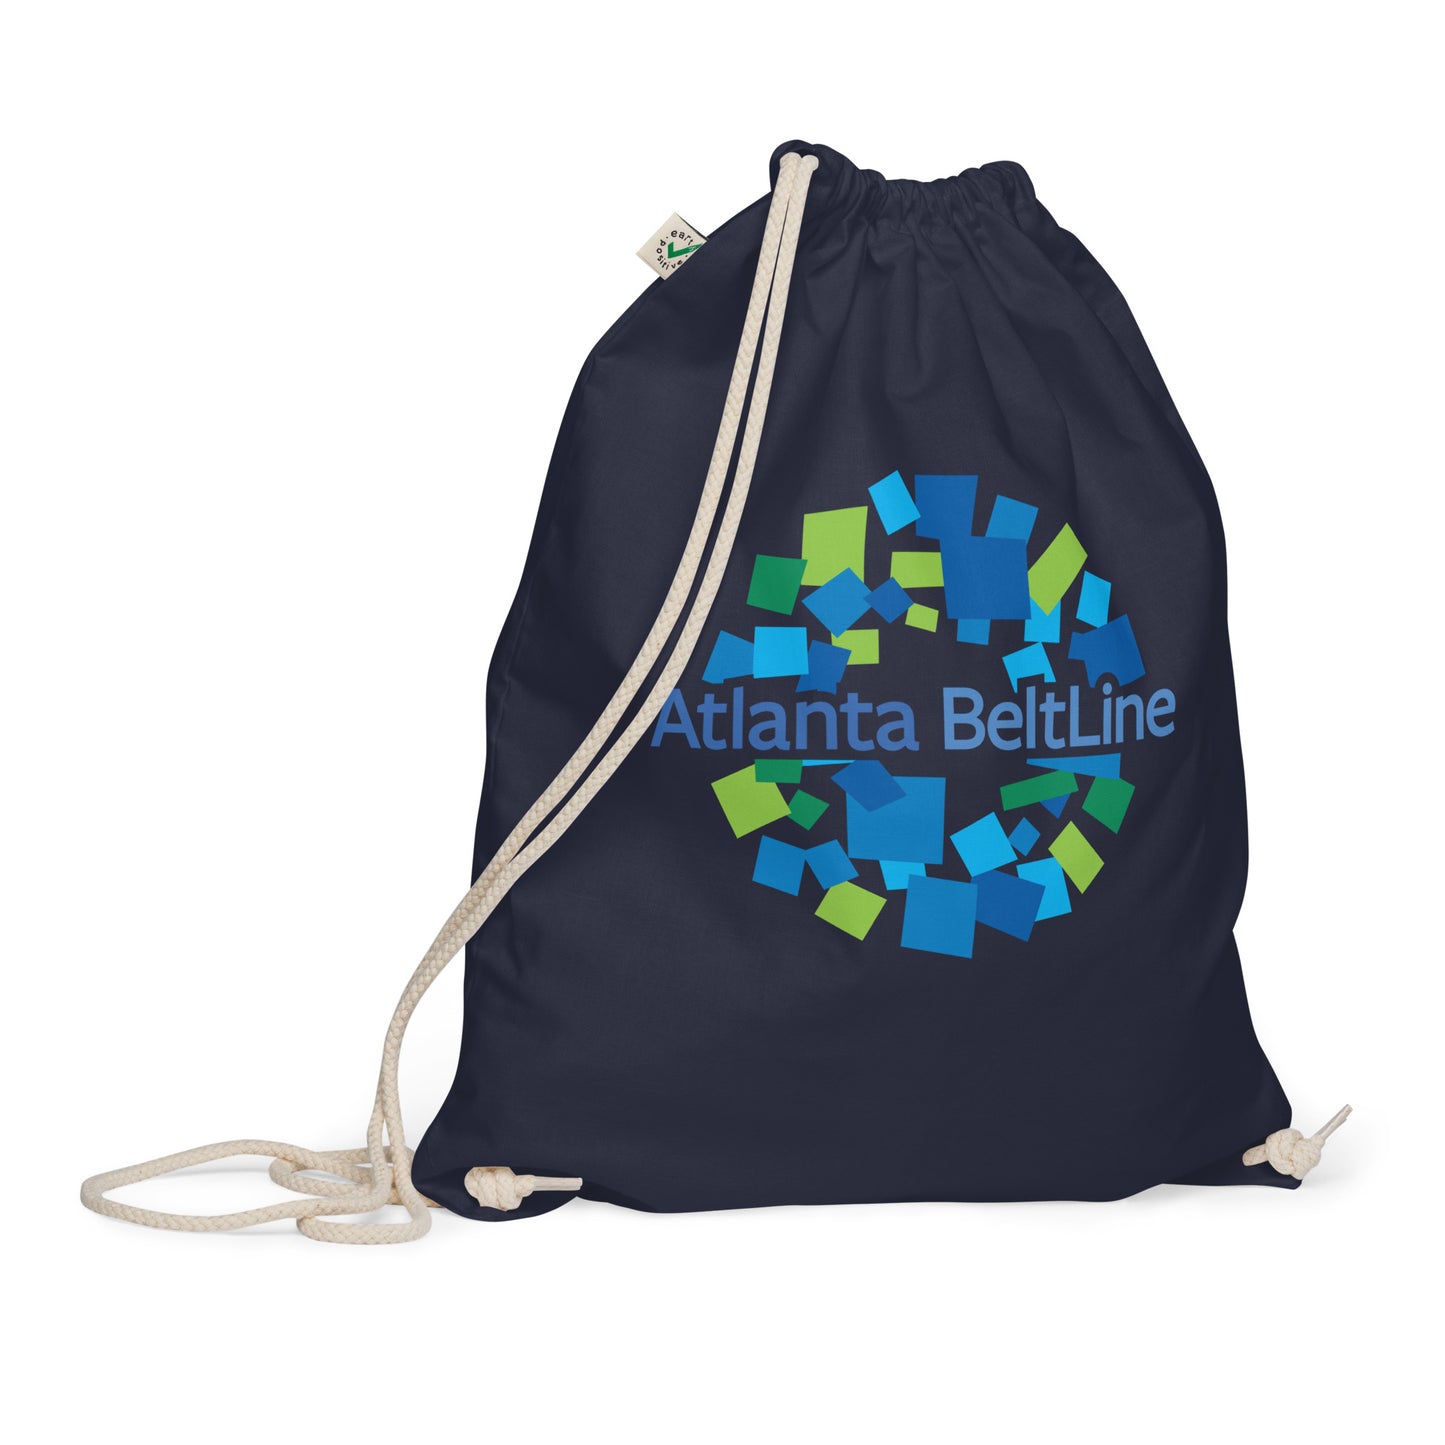 BeltLine Organic cotton bag